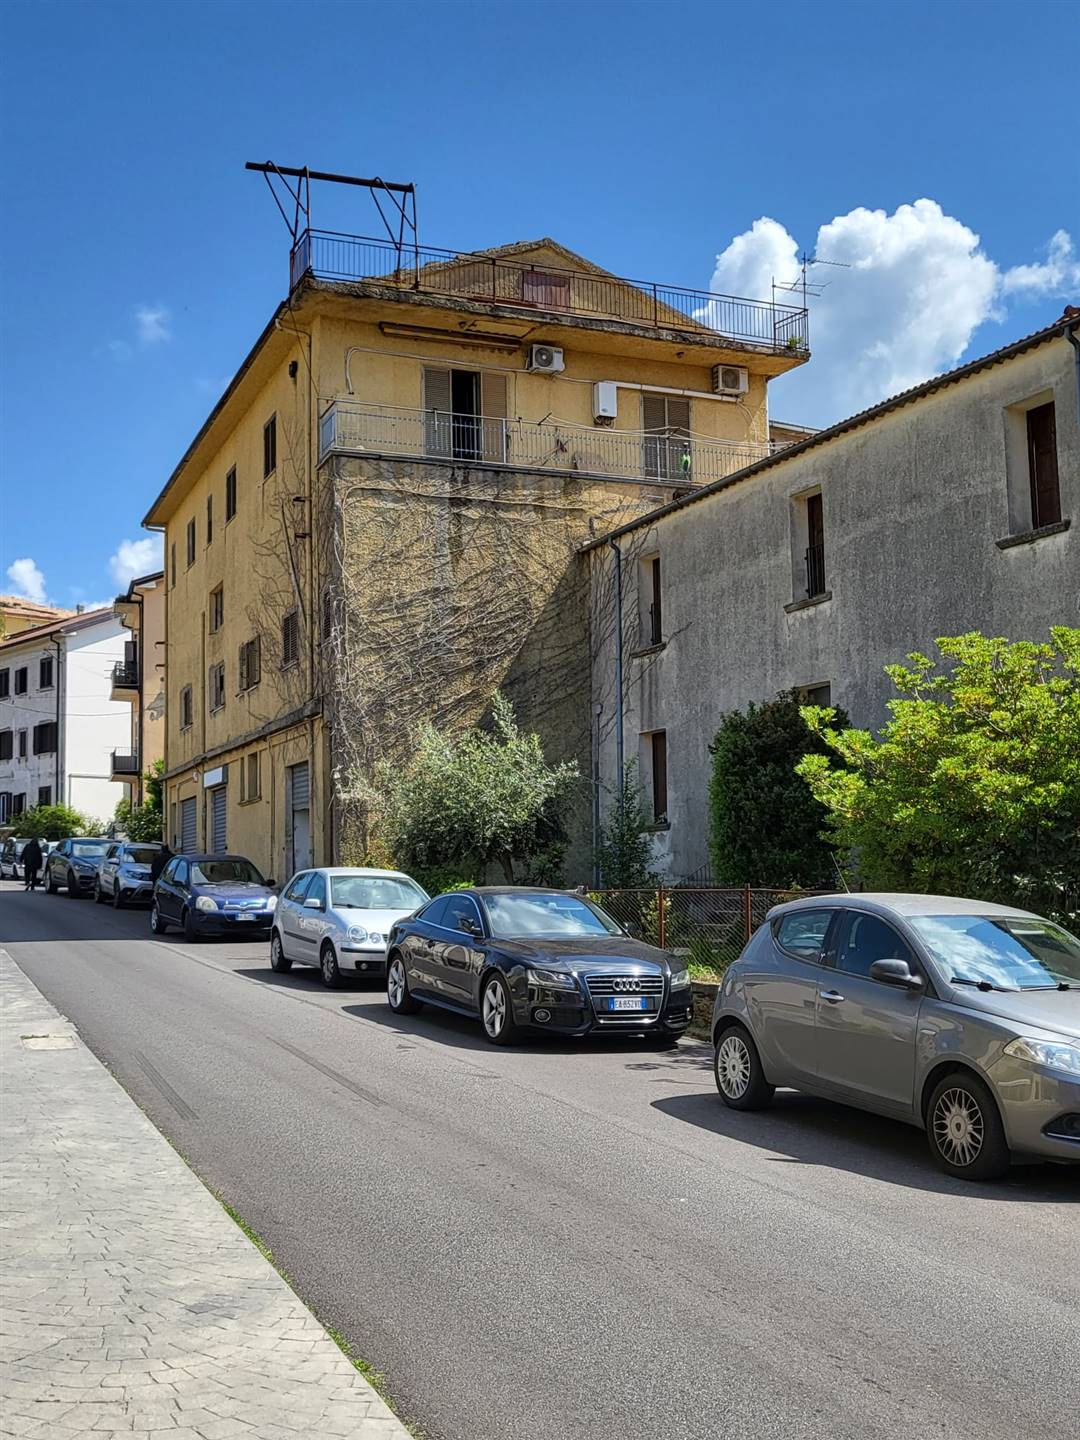 Appartamento in vendita a Montalto Uffugo, 5 locali, zona Località: STAZIONE DI MONTALTO, prezzo € 30.000 | CambioCasa.it